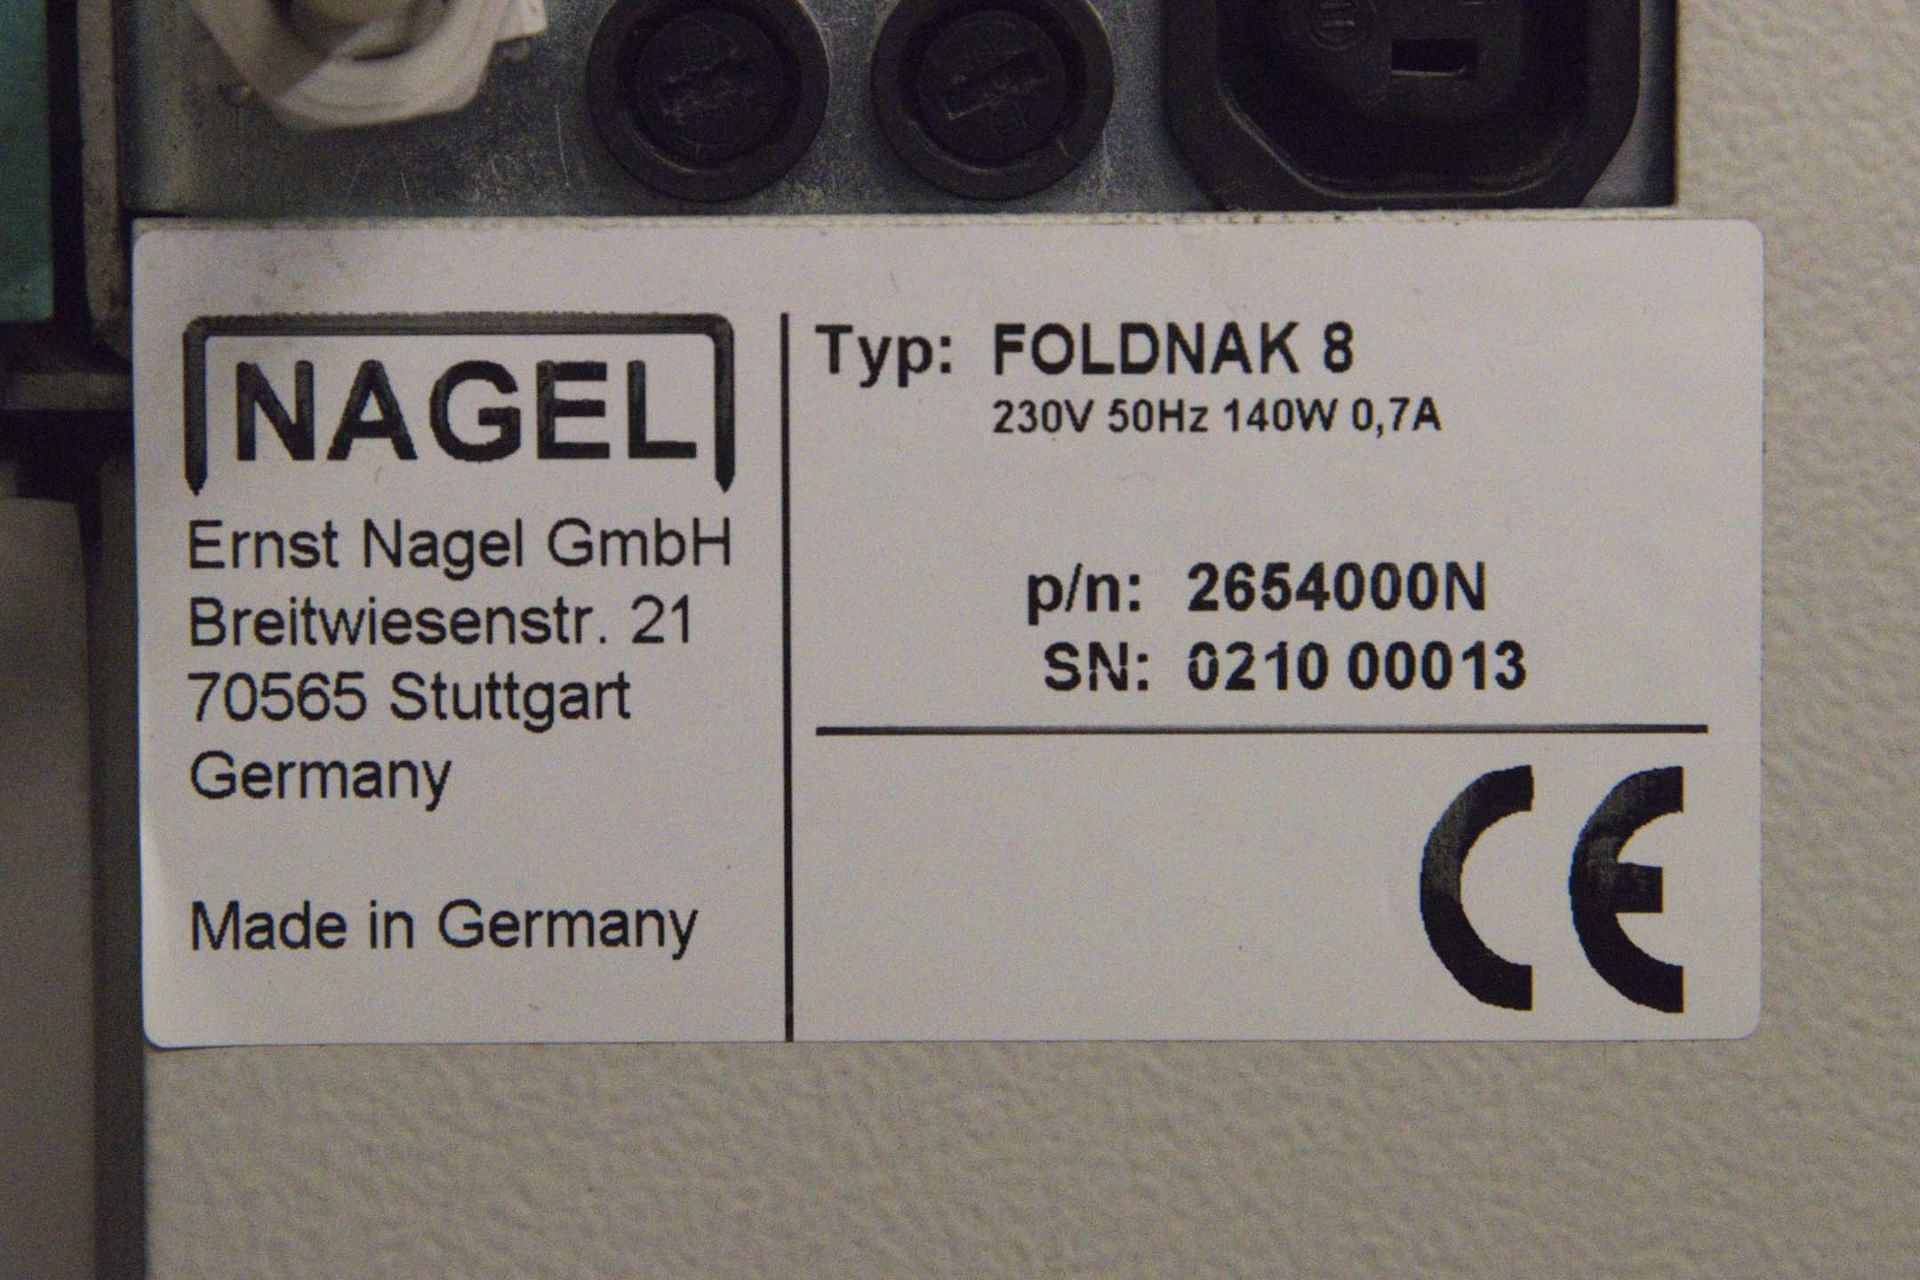 Nagel Foldnak 8 booklet maker SRA3 Serial No. 021000013 - Image 2 of 2